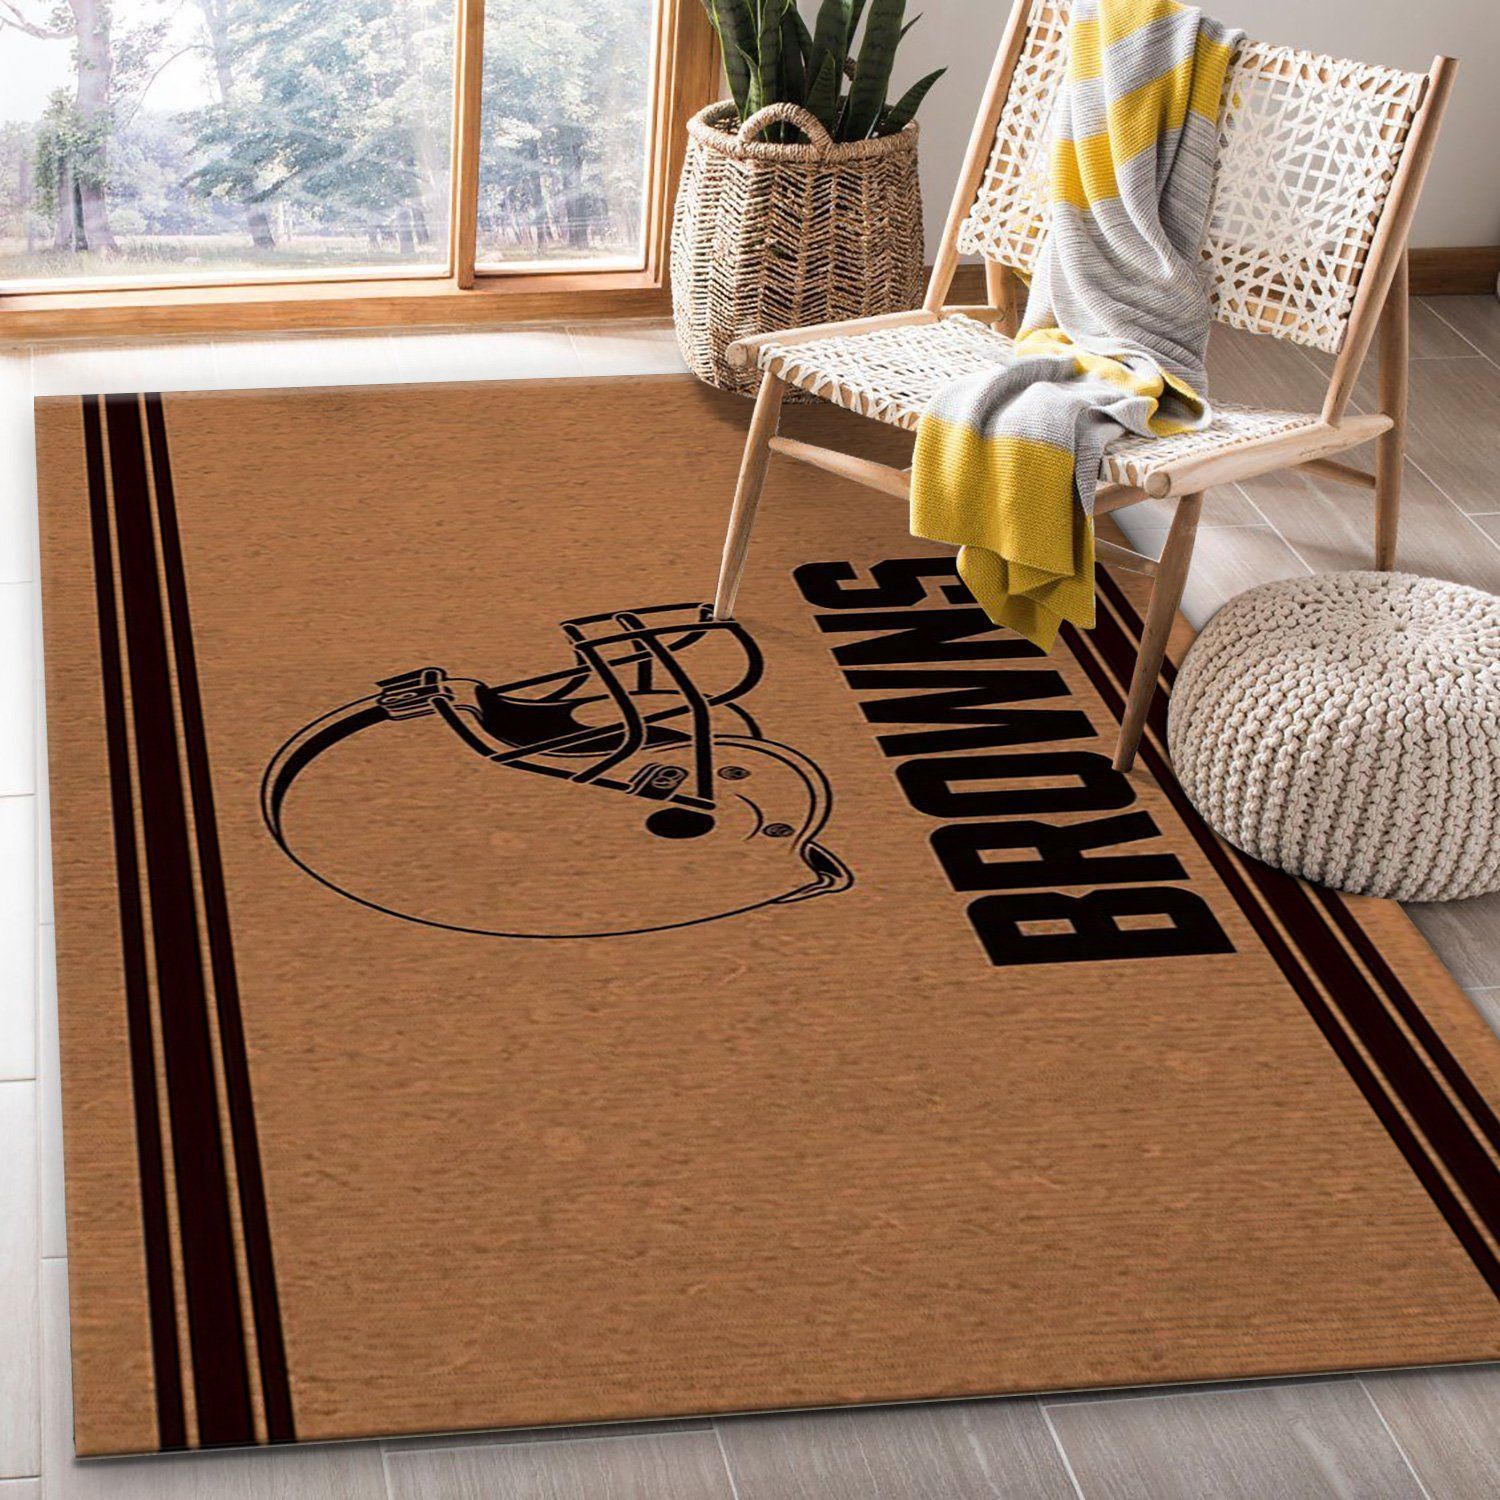 Cleveland Browns Brown Logo NFL Area Rug Carpet